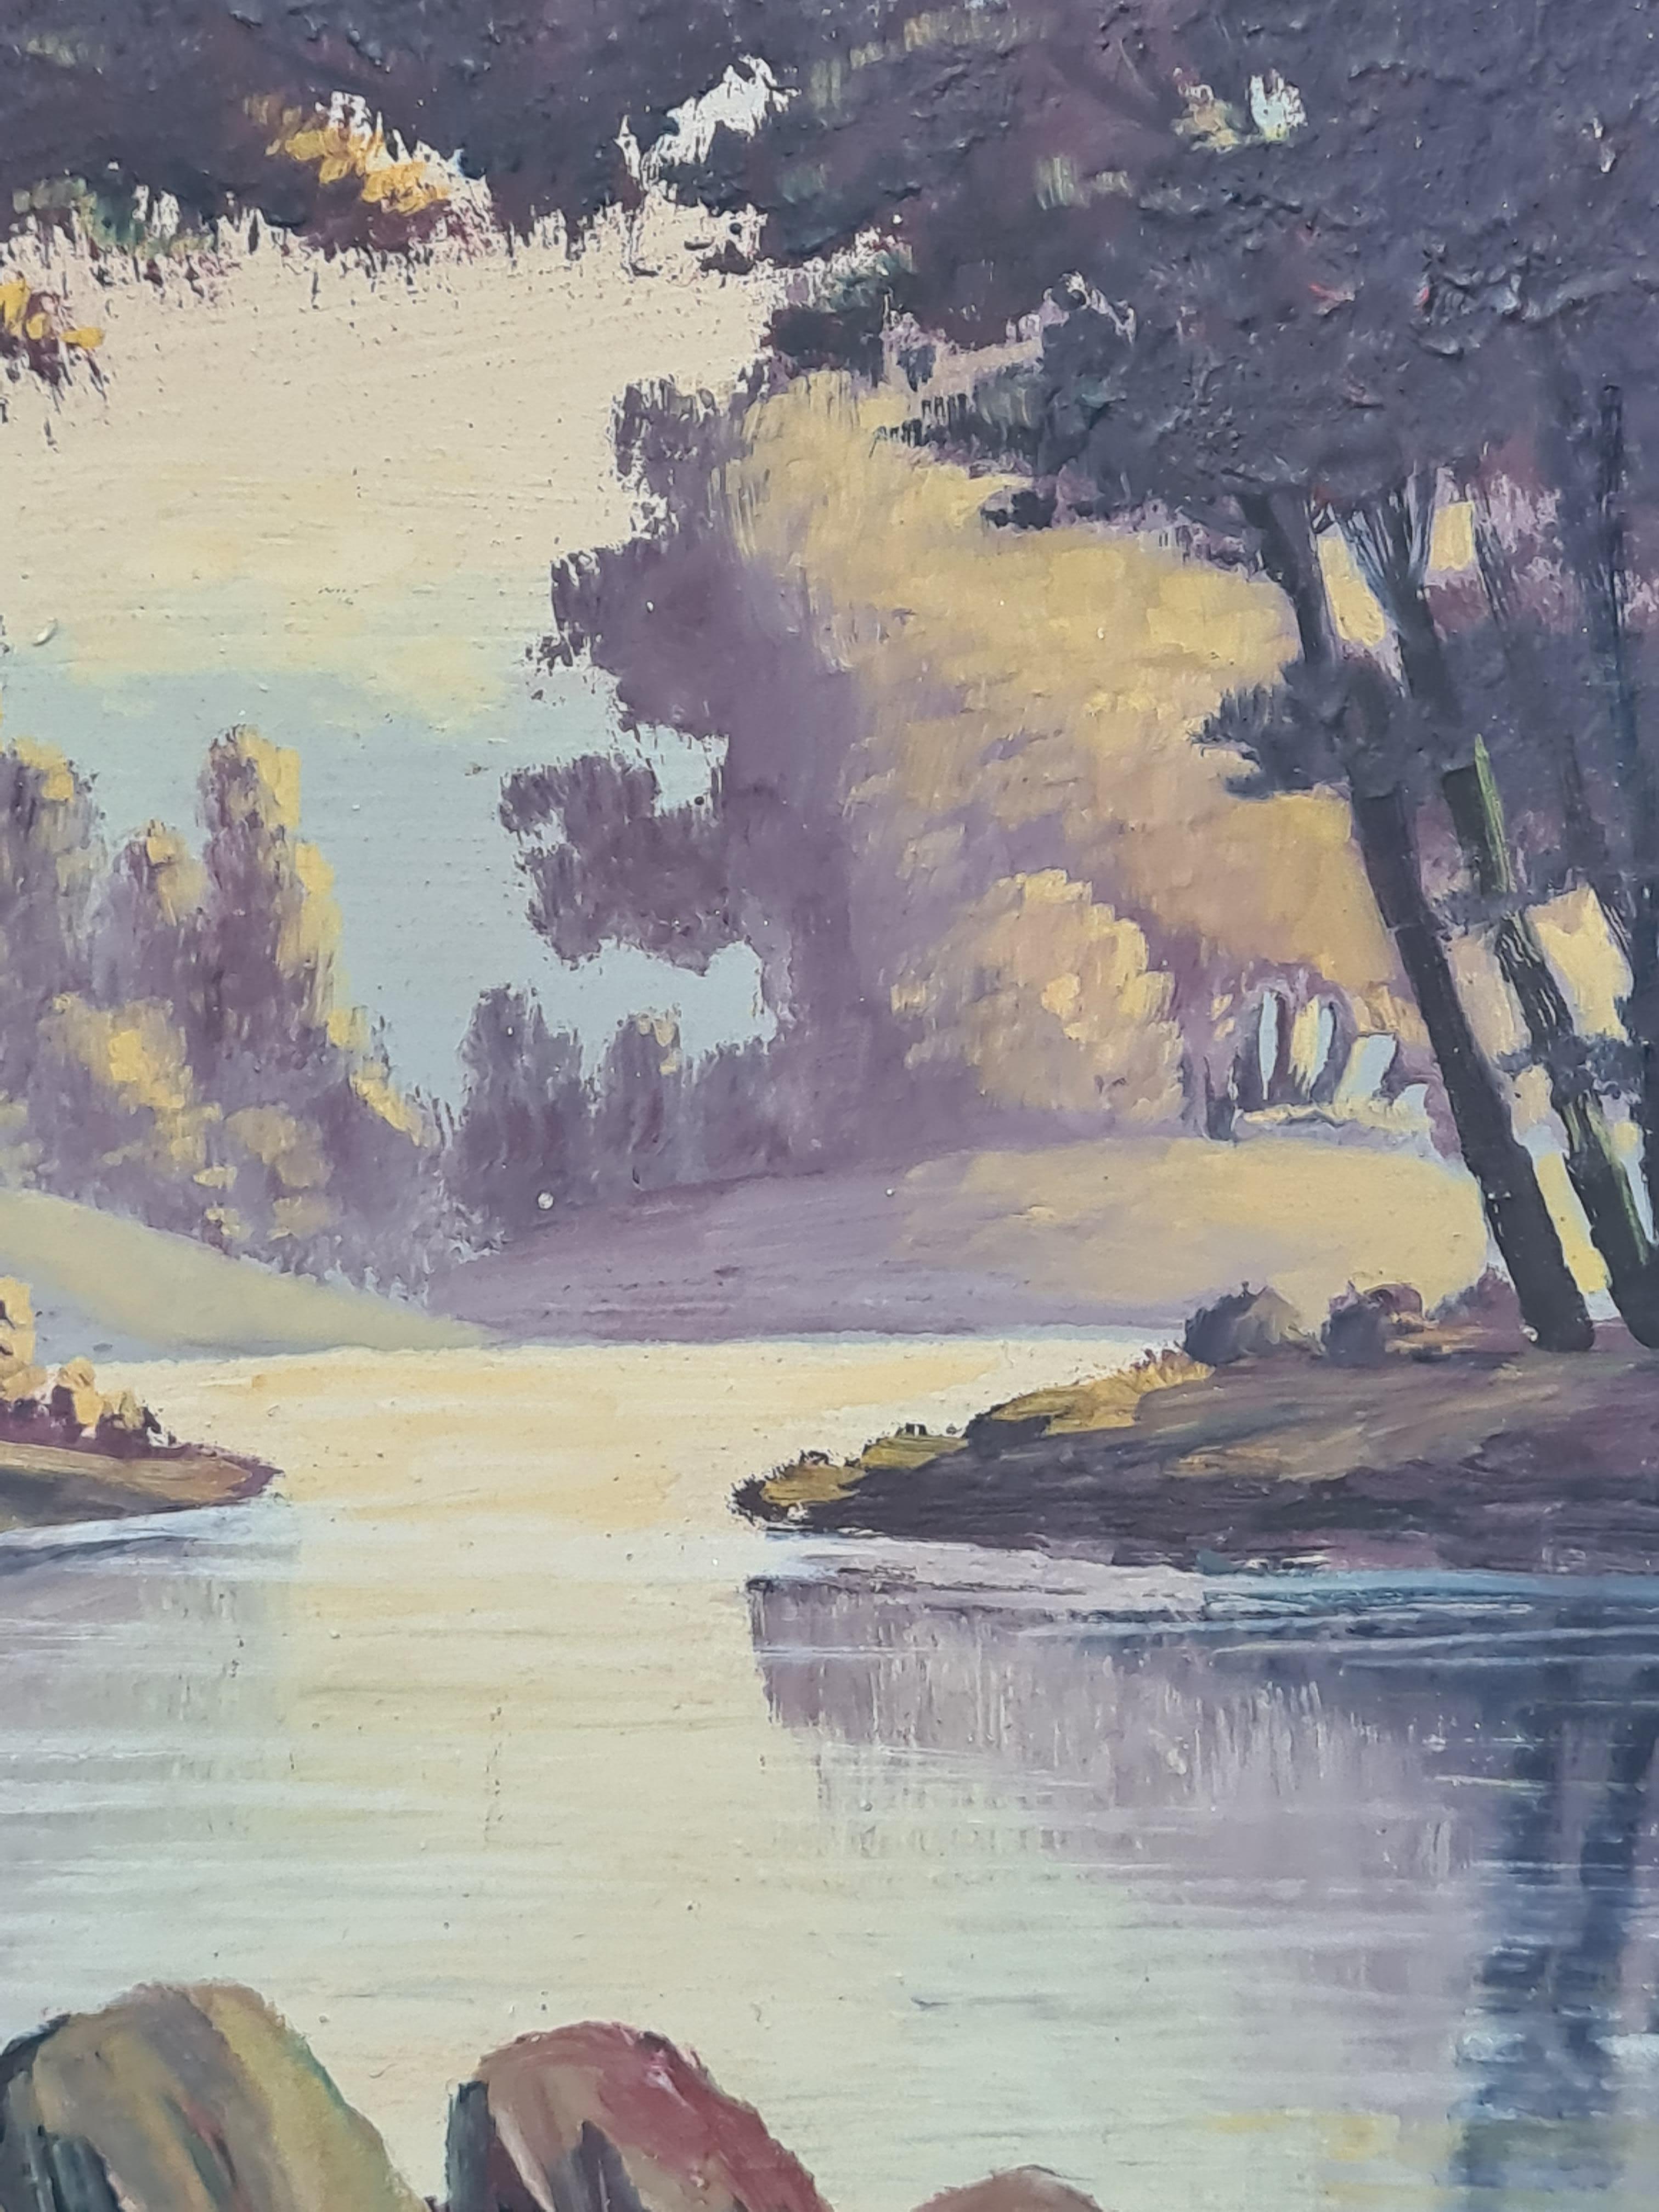 Un paysage idyllique peint à l'huile sur panneau par Boggio. Le tableau est signé en bas à droite.

Une vue idéalisée d'un paysage lacustre dans un vallon ombragé dans le style de l'école de Barbizon.